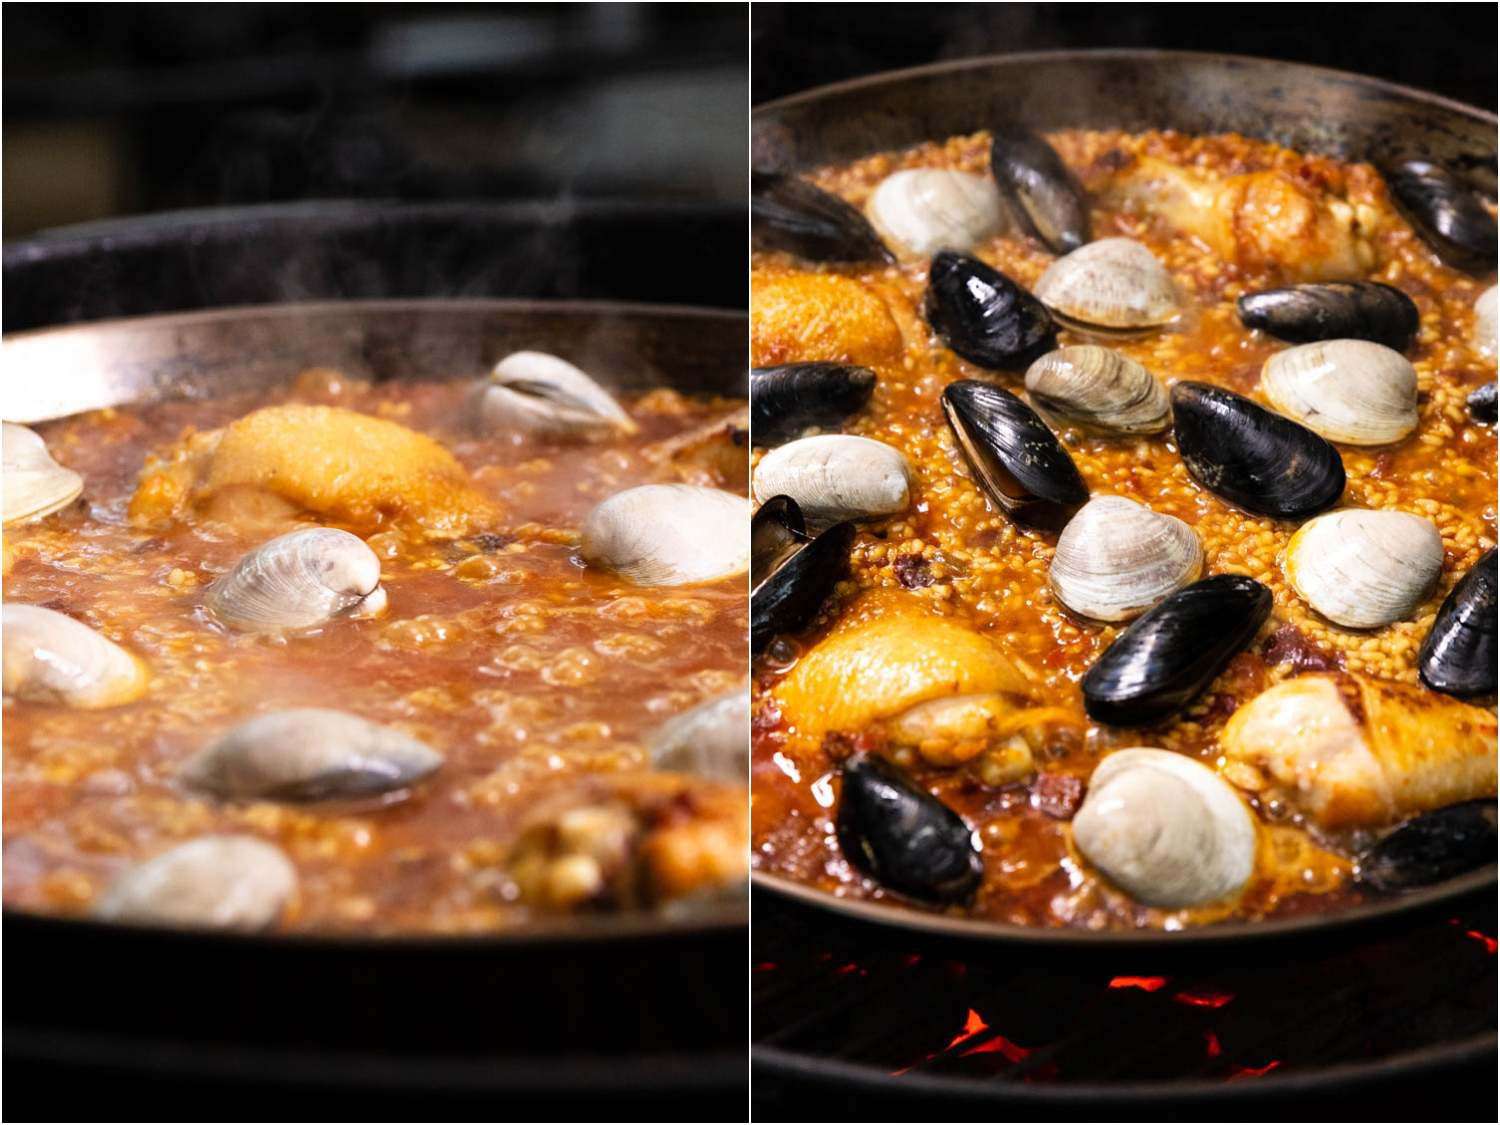 这两张拼贴的照片展示了鸡肉、蛤蜊和贻贝一起依偎在一个大海鲜饭里。gydF4y2Ba